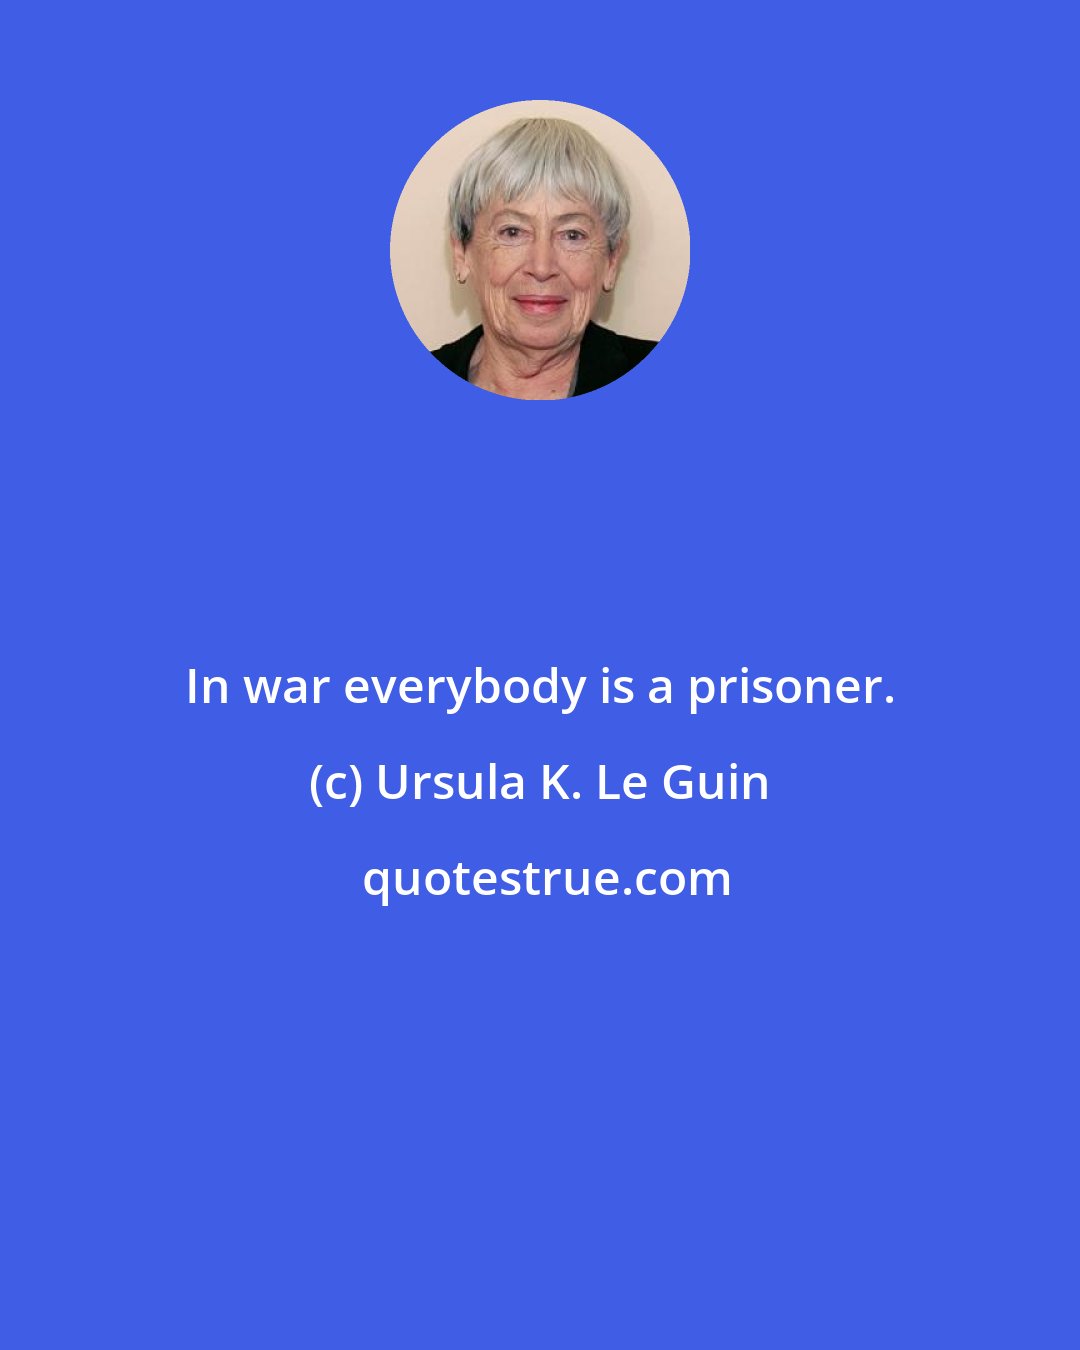 Ursula K. Le Guin: In war everybody is a prisoner.